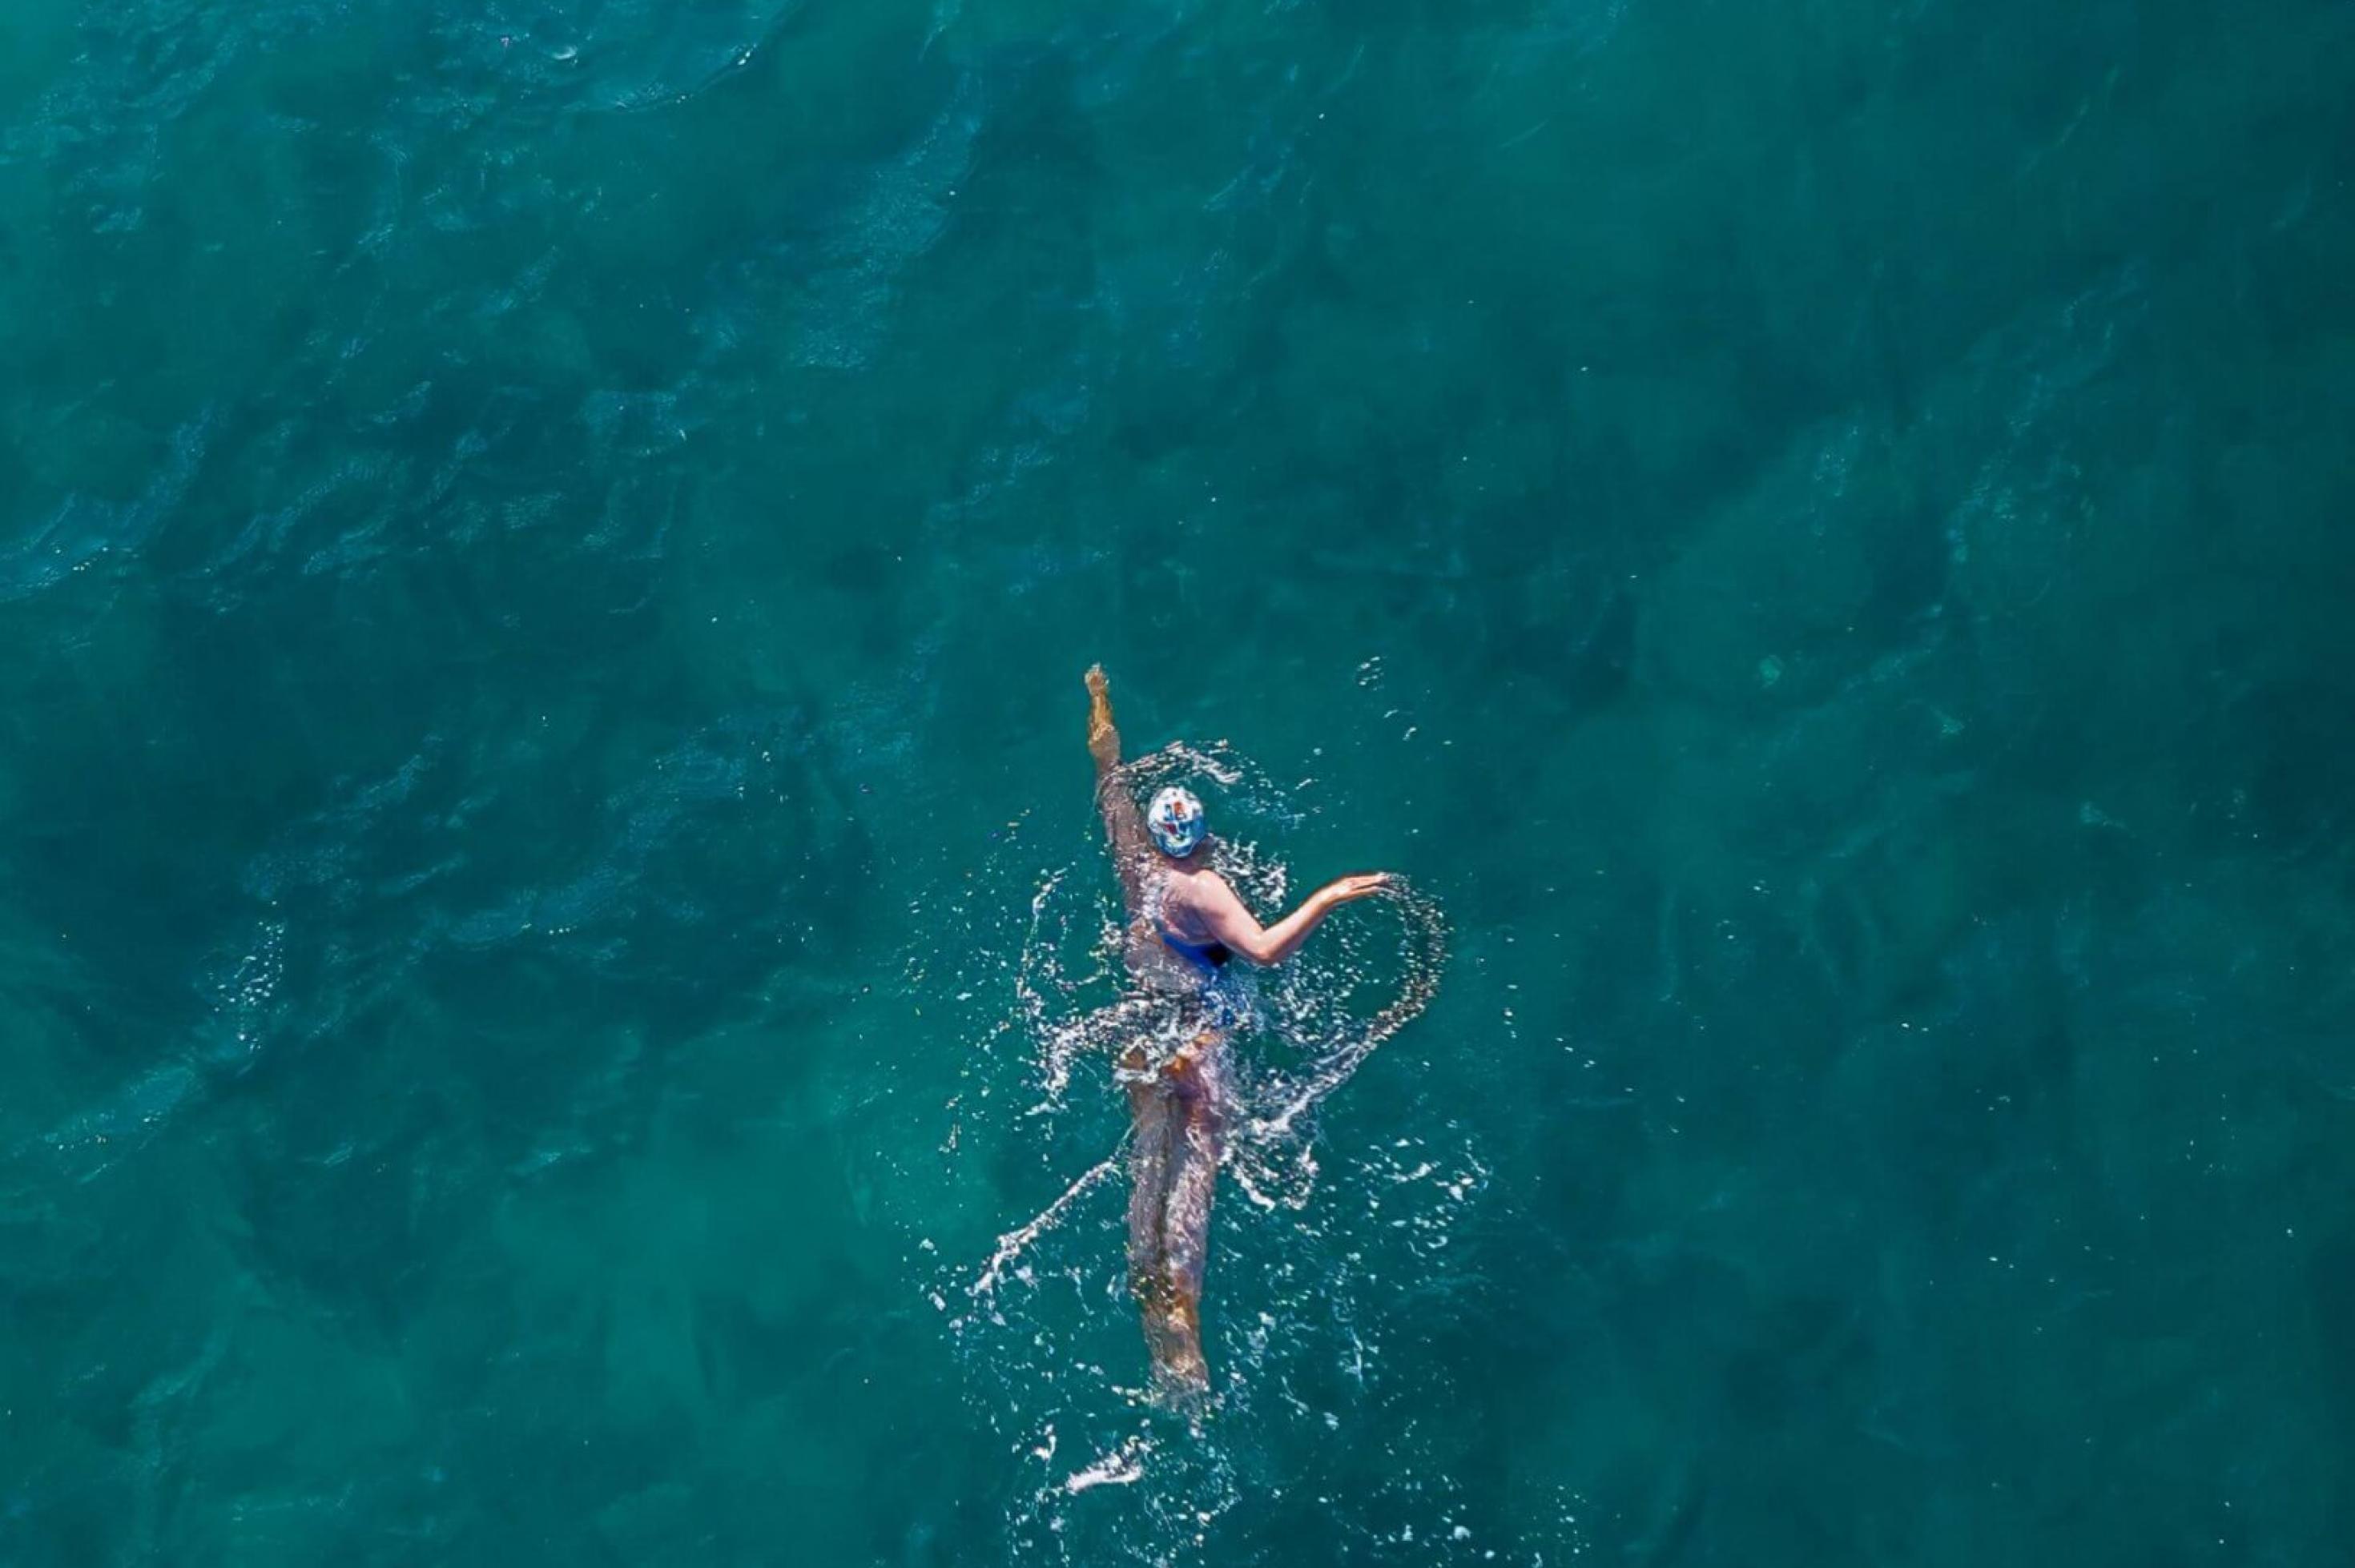 Frau schwimmt in türkisem Meer. Aufnahme von oben